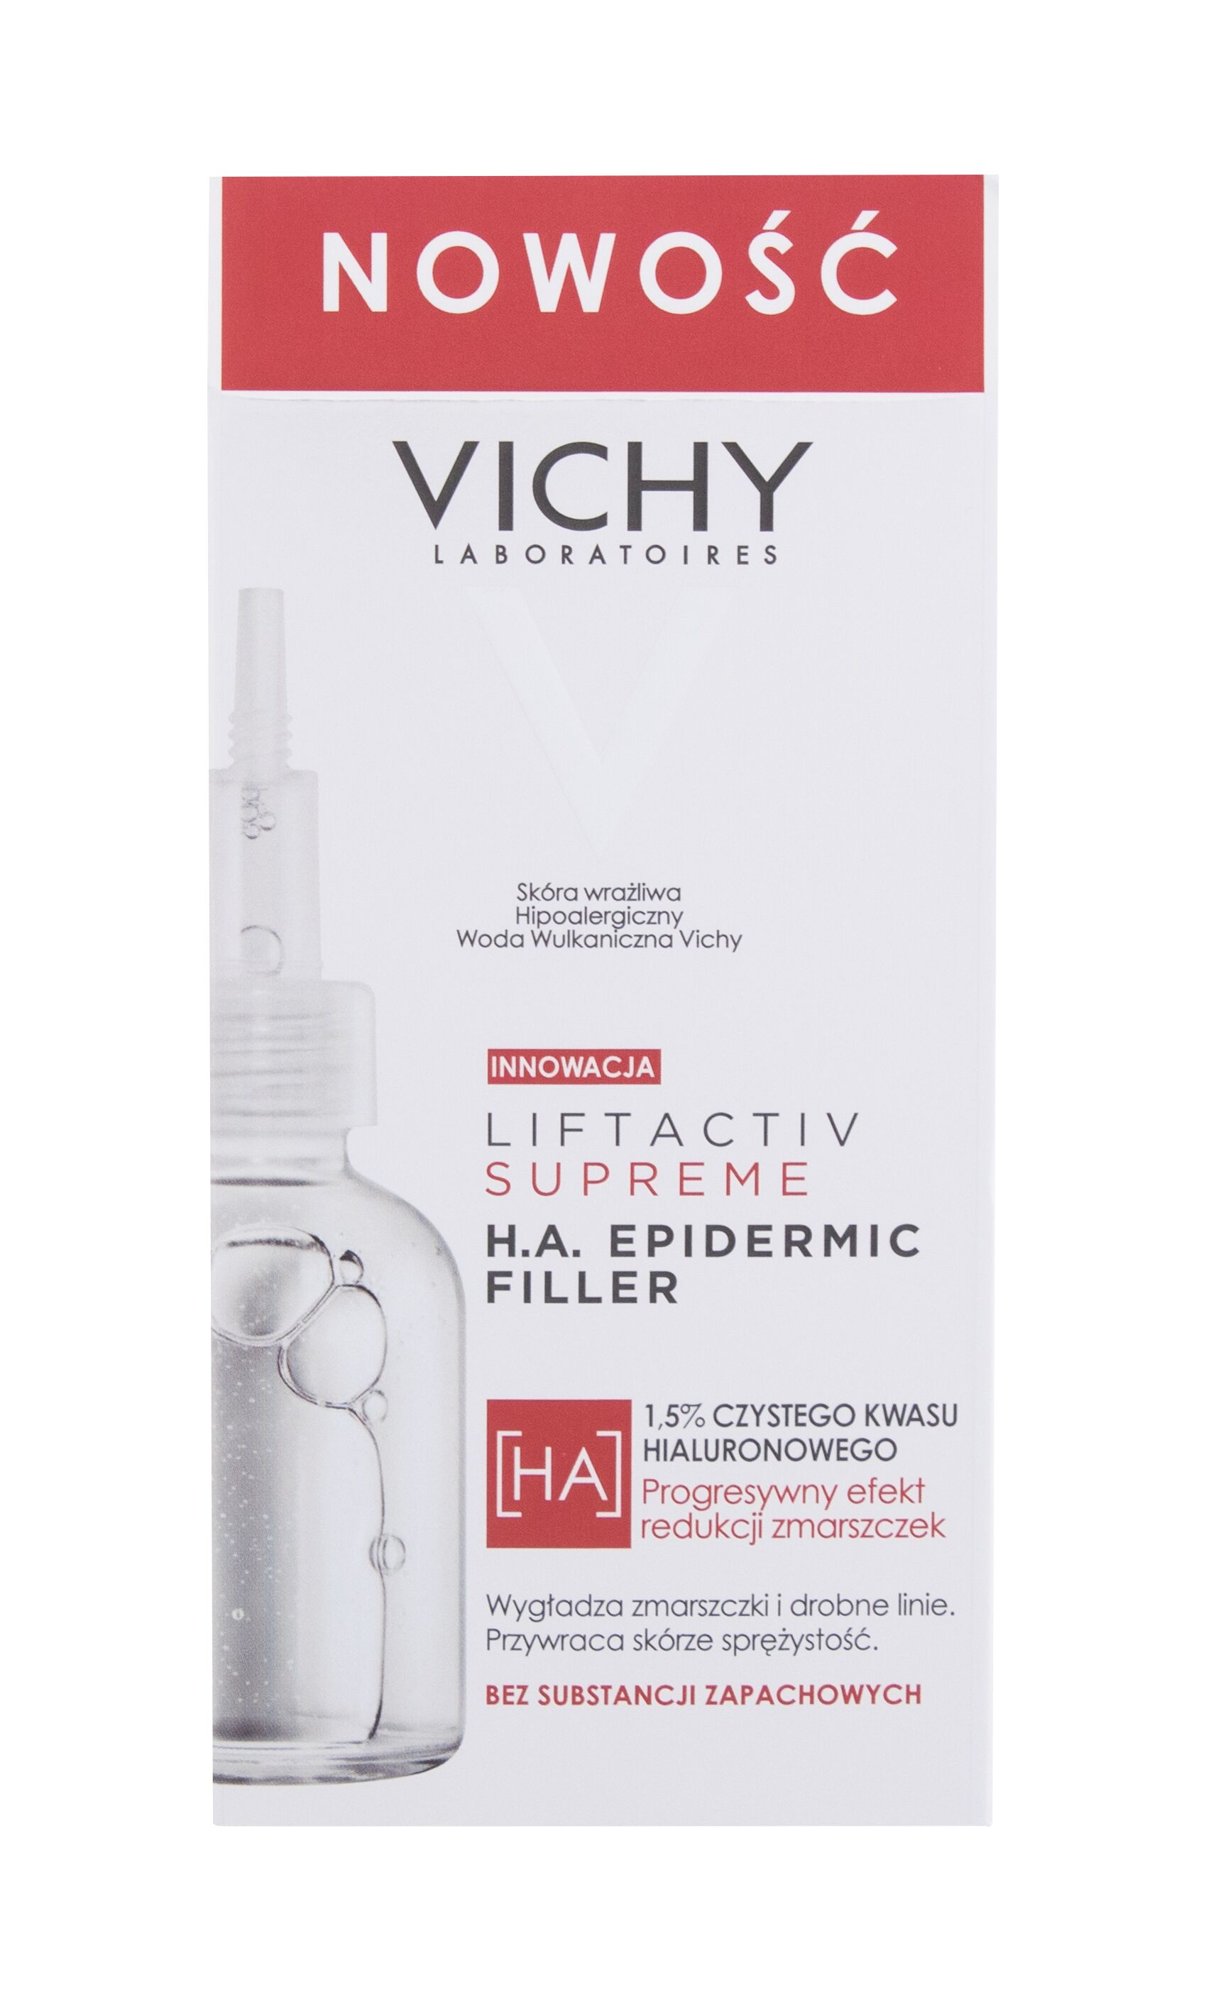 Vichy Liftactiv Supreme H.A. Epidermic Filler Veido serumas